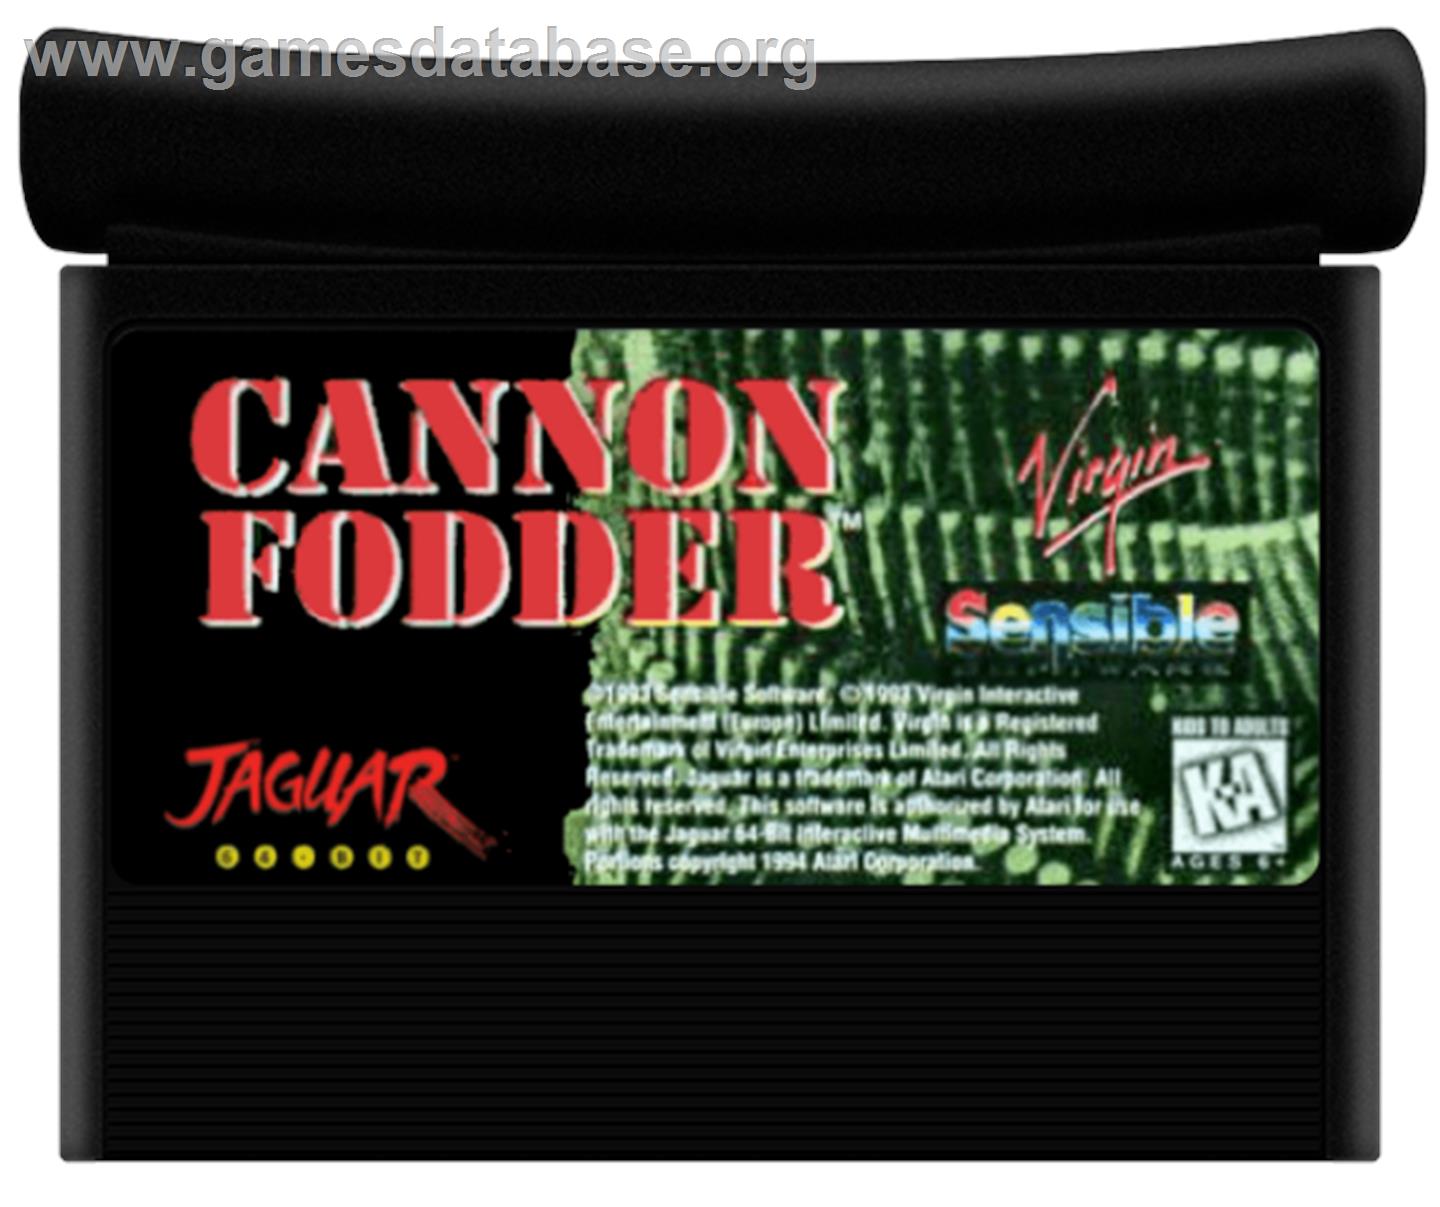 Cannon Fodder - Atari Jaguar - Artwork - Cartridge